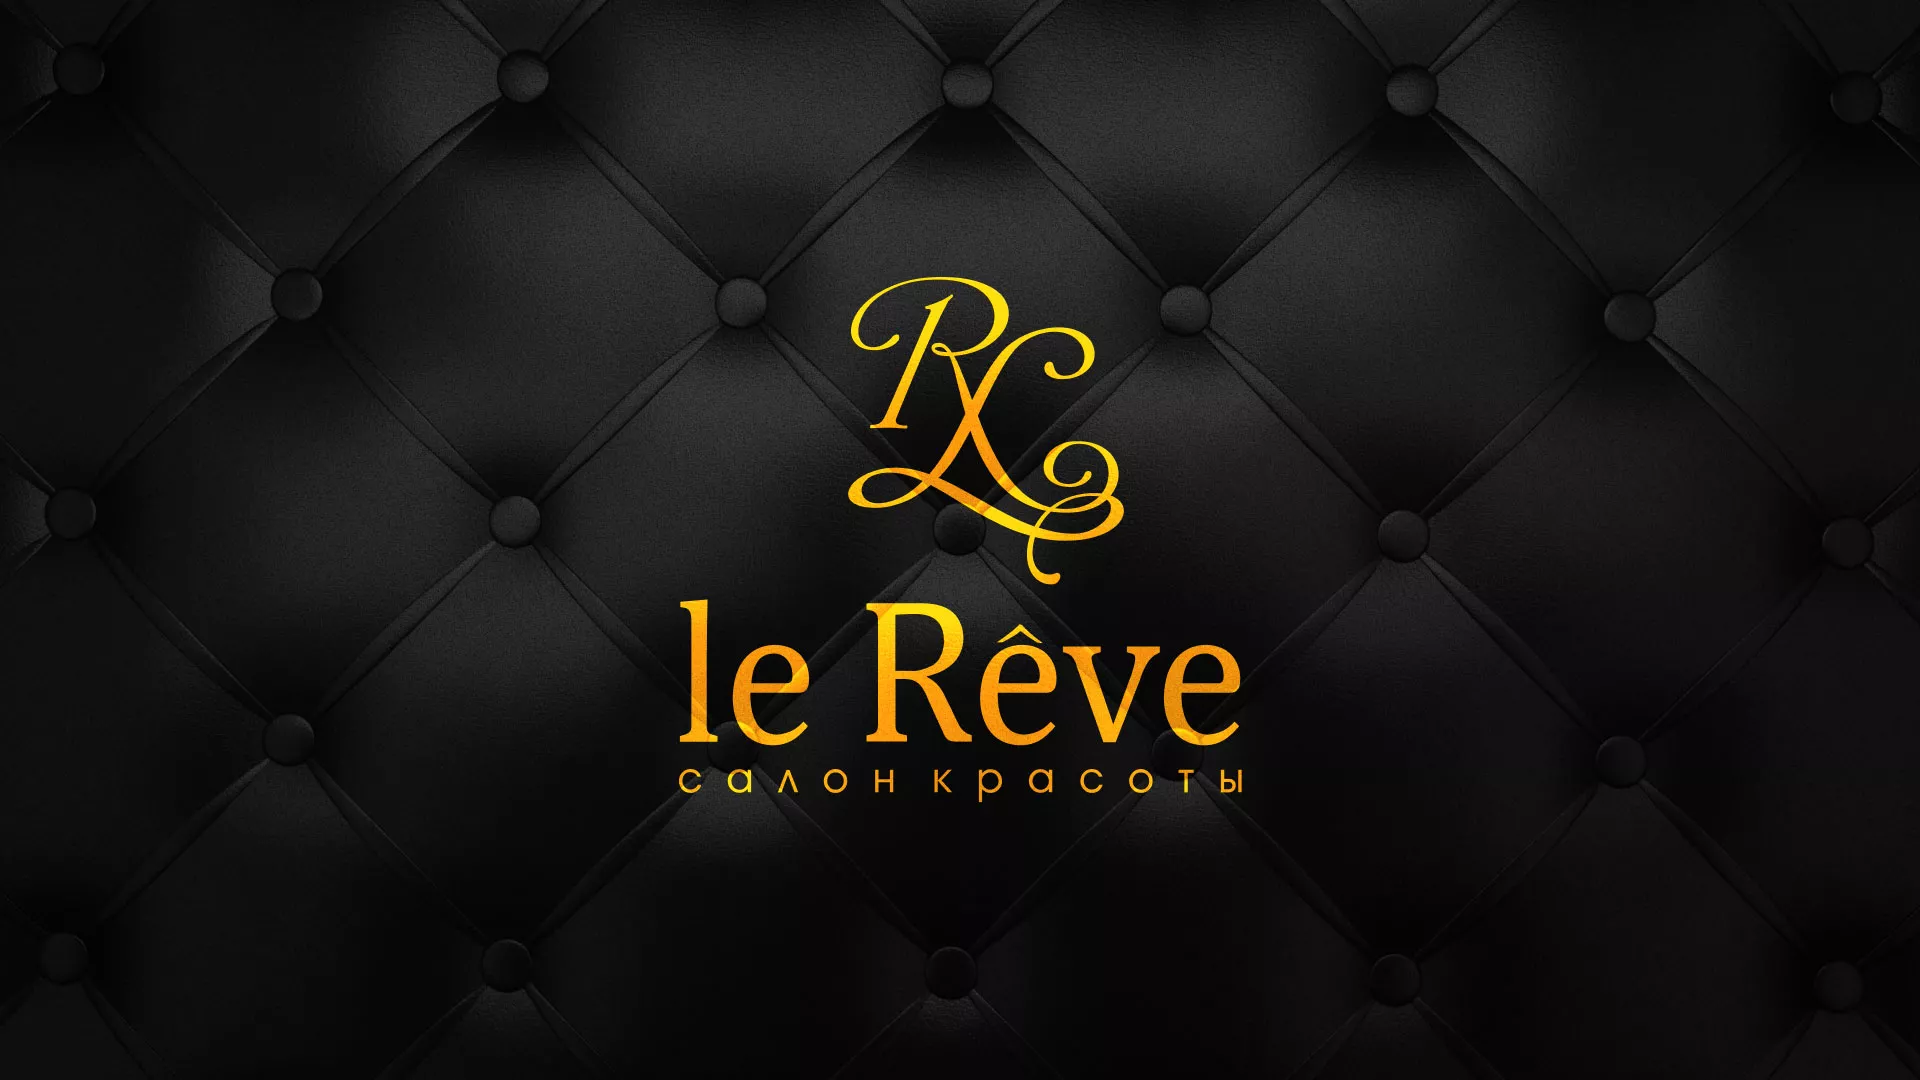 Разработка листовок для салона красоты «Le Reve» в Саяногорске